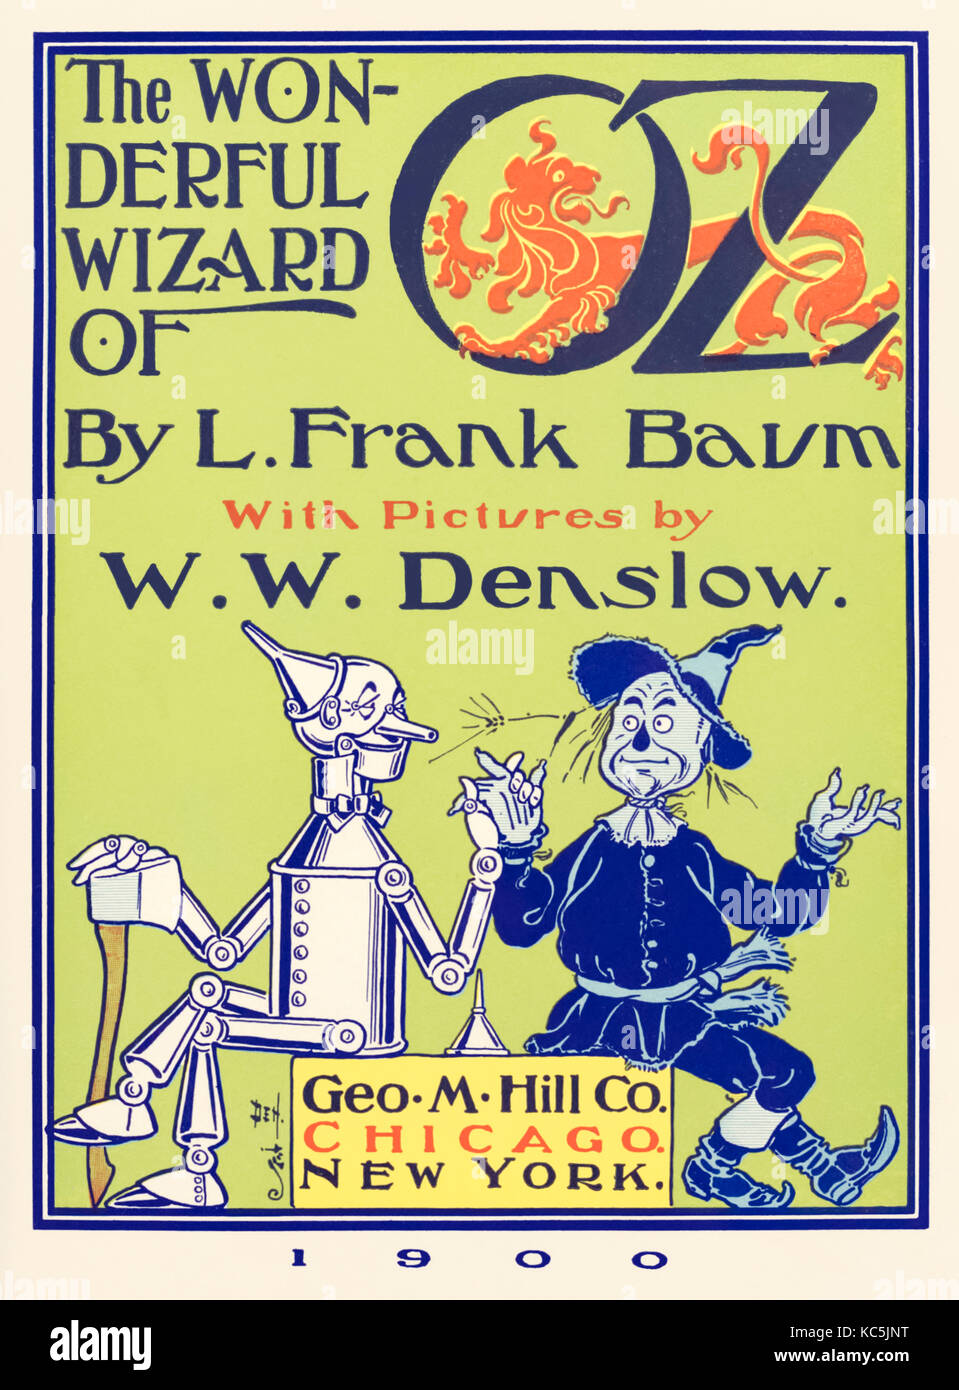 Titel von "Der Zauberer von Oz" von L.Frank Baum (1856-1919) mit Bildern von W. W. Denslow (1856-1915), mit dem Blechmann und der vogelscheuche. Vollständiger Satz volle Seite Bilder aus der ersten Ausgabe im Oktober 2017 zu folgen. Weitere Informationen finden Sie unten. Stockfoto